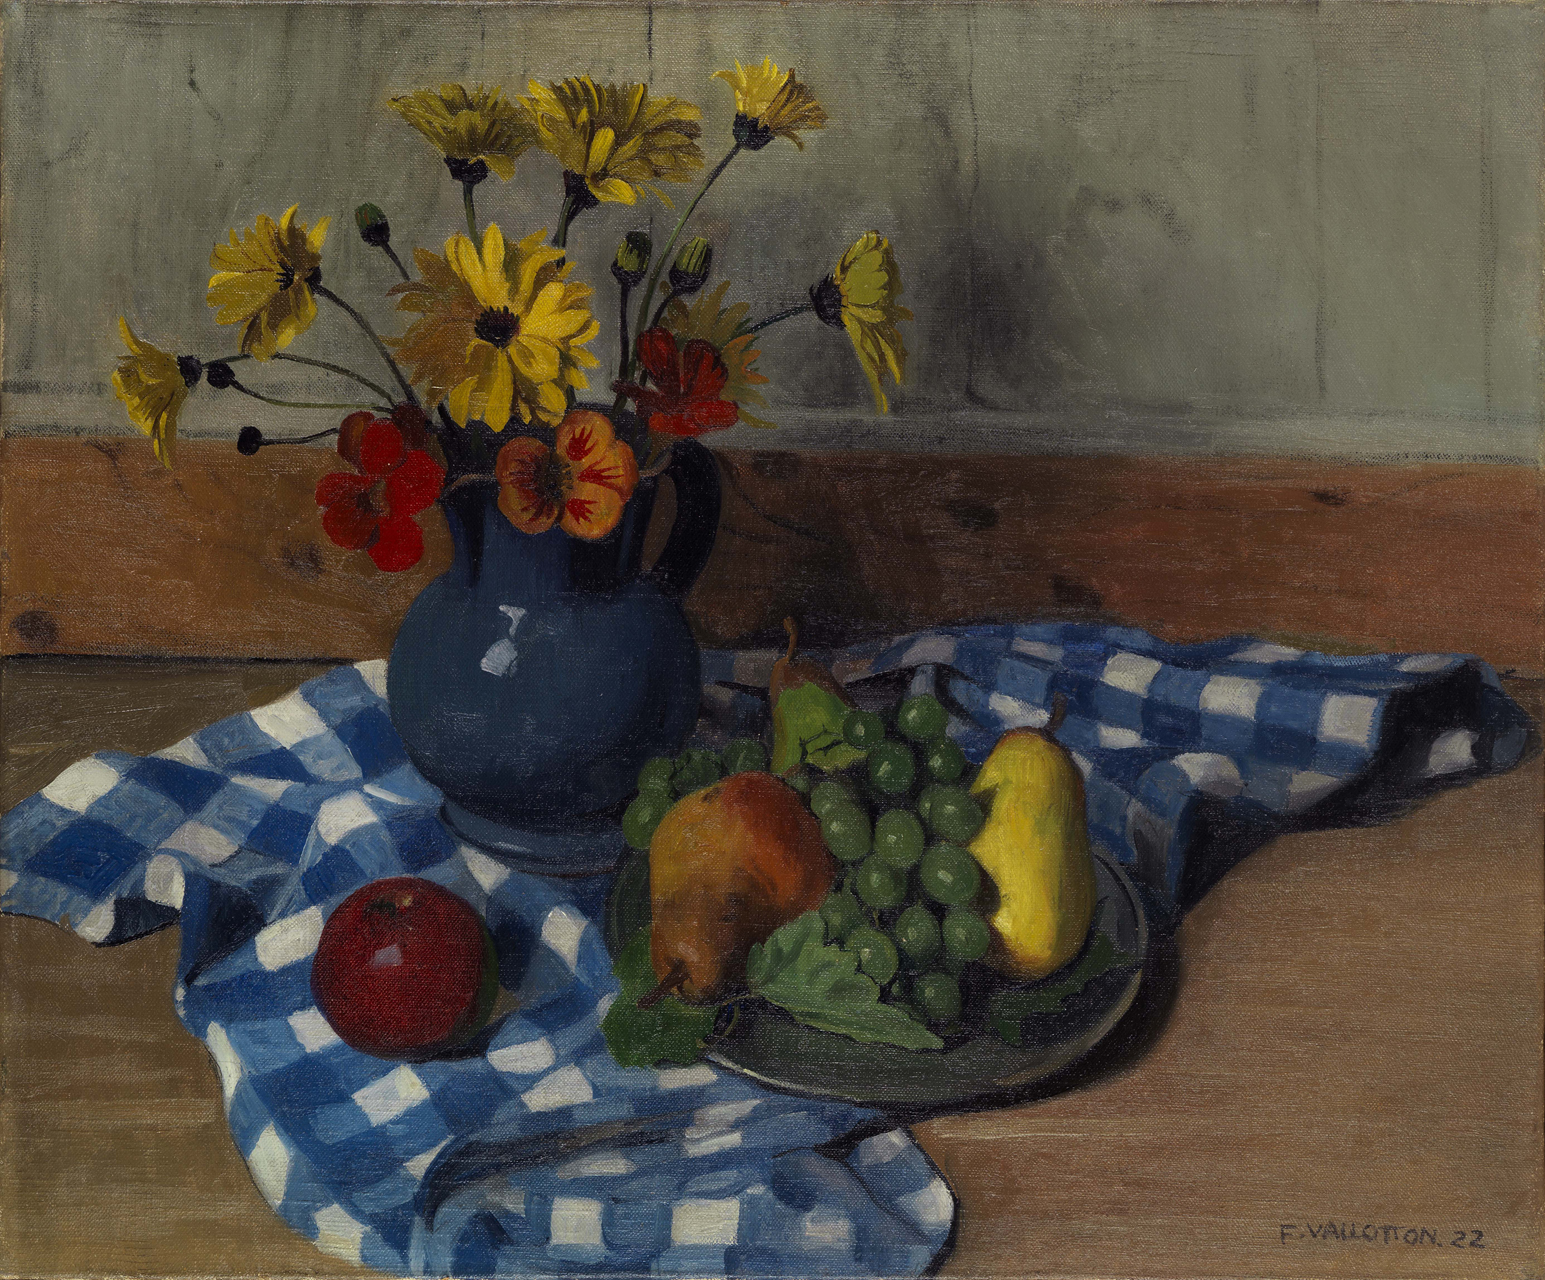 Reinhard Pods, Ohne Titel (will), 1981, Oil on canvas, 200 x 220.3 cm